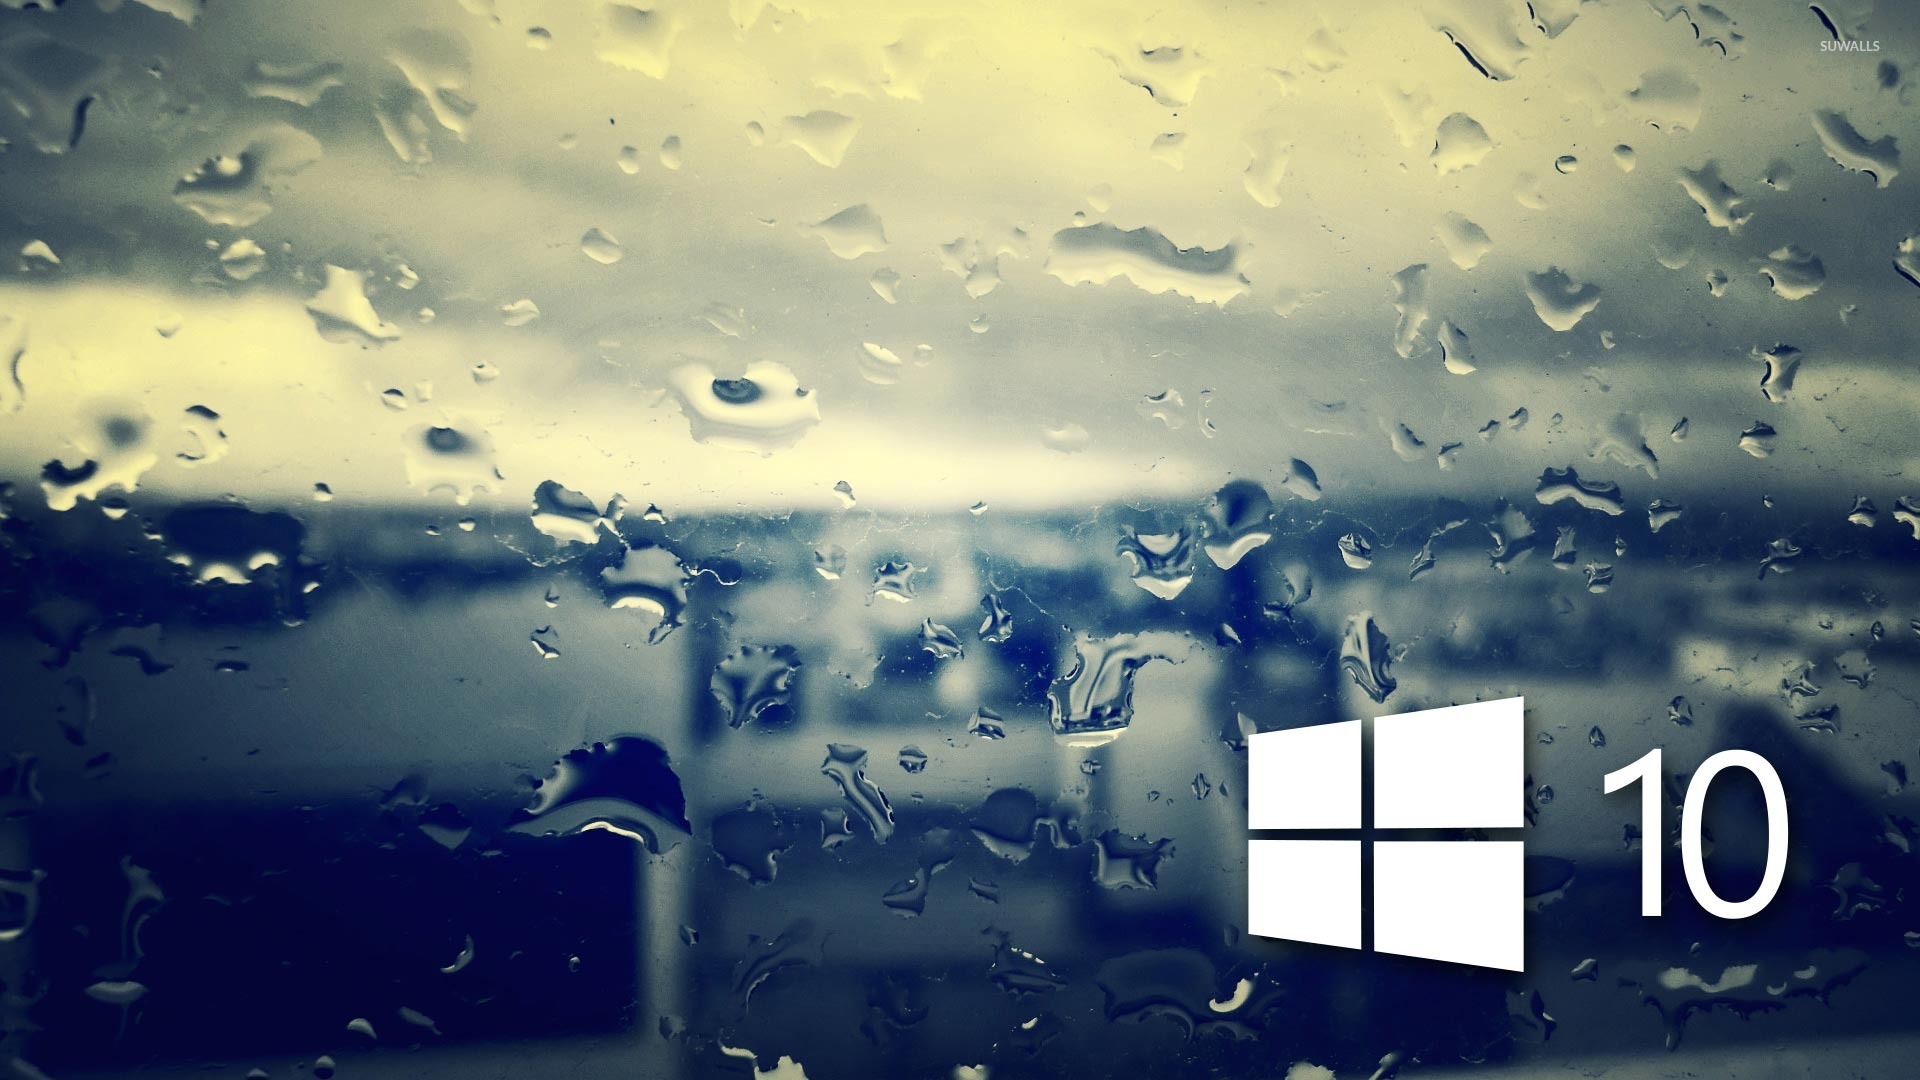 Rain wallpaper для windows 10 как пользоваться